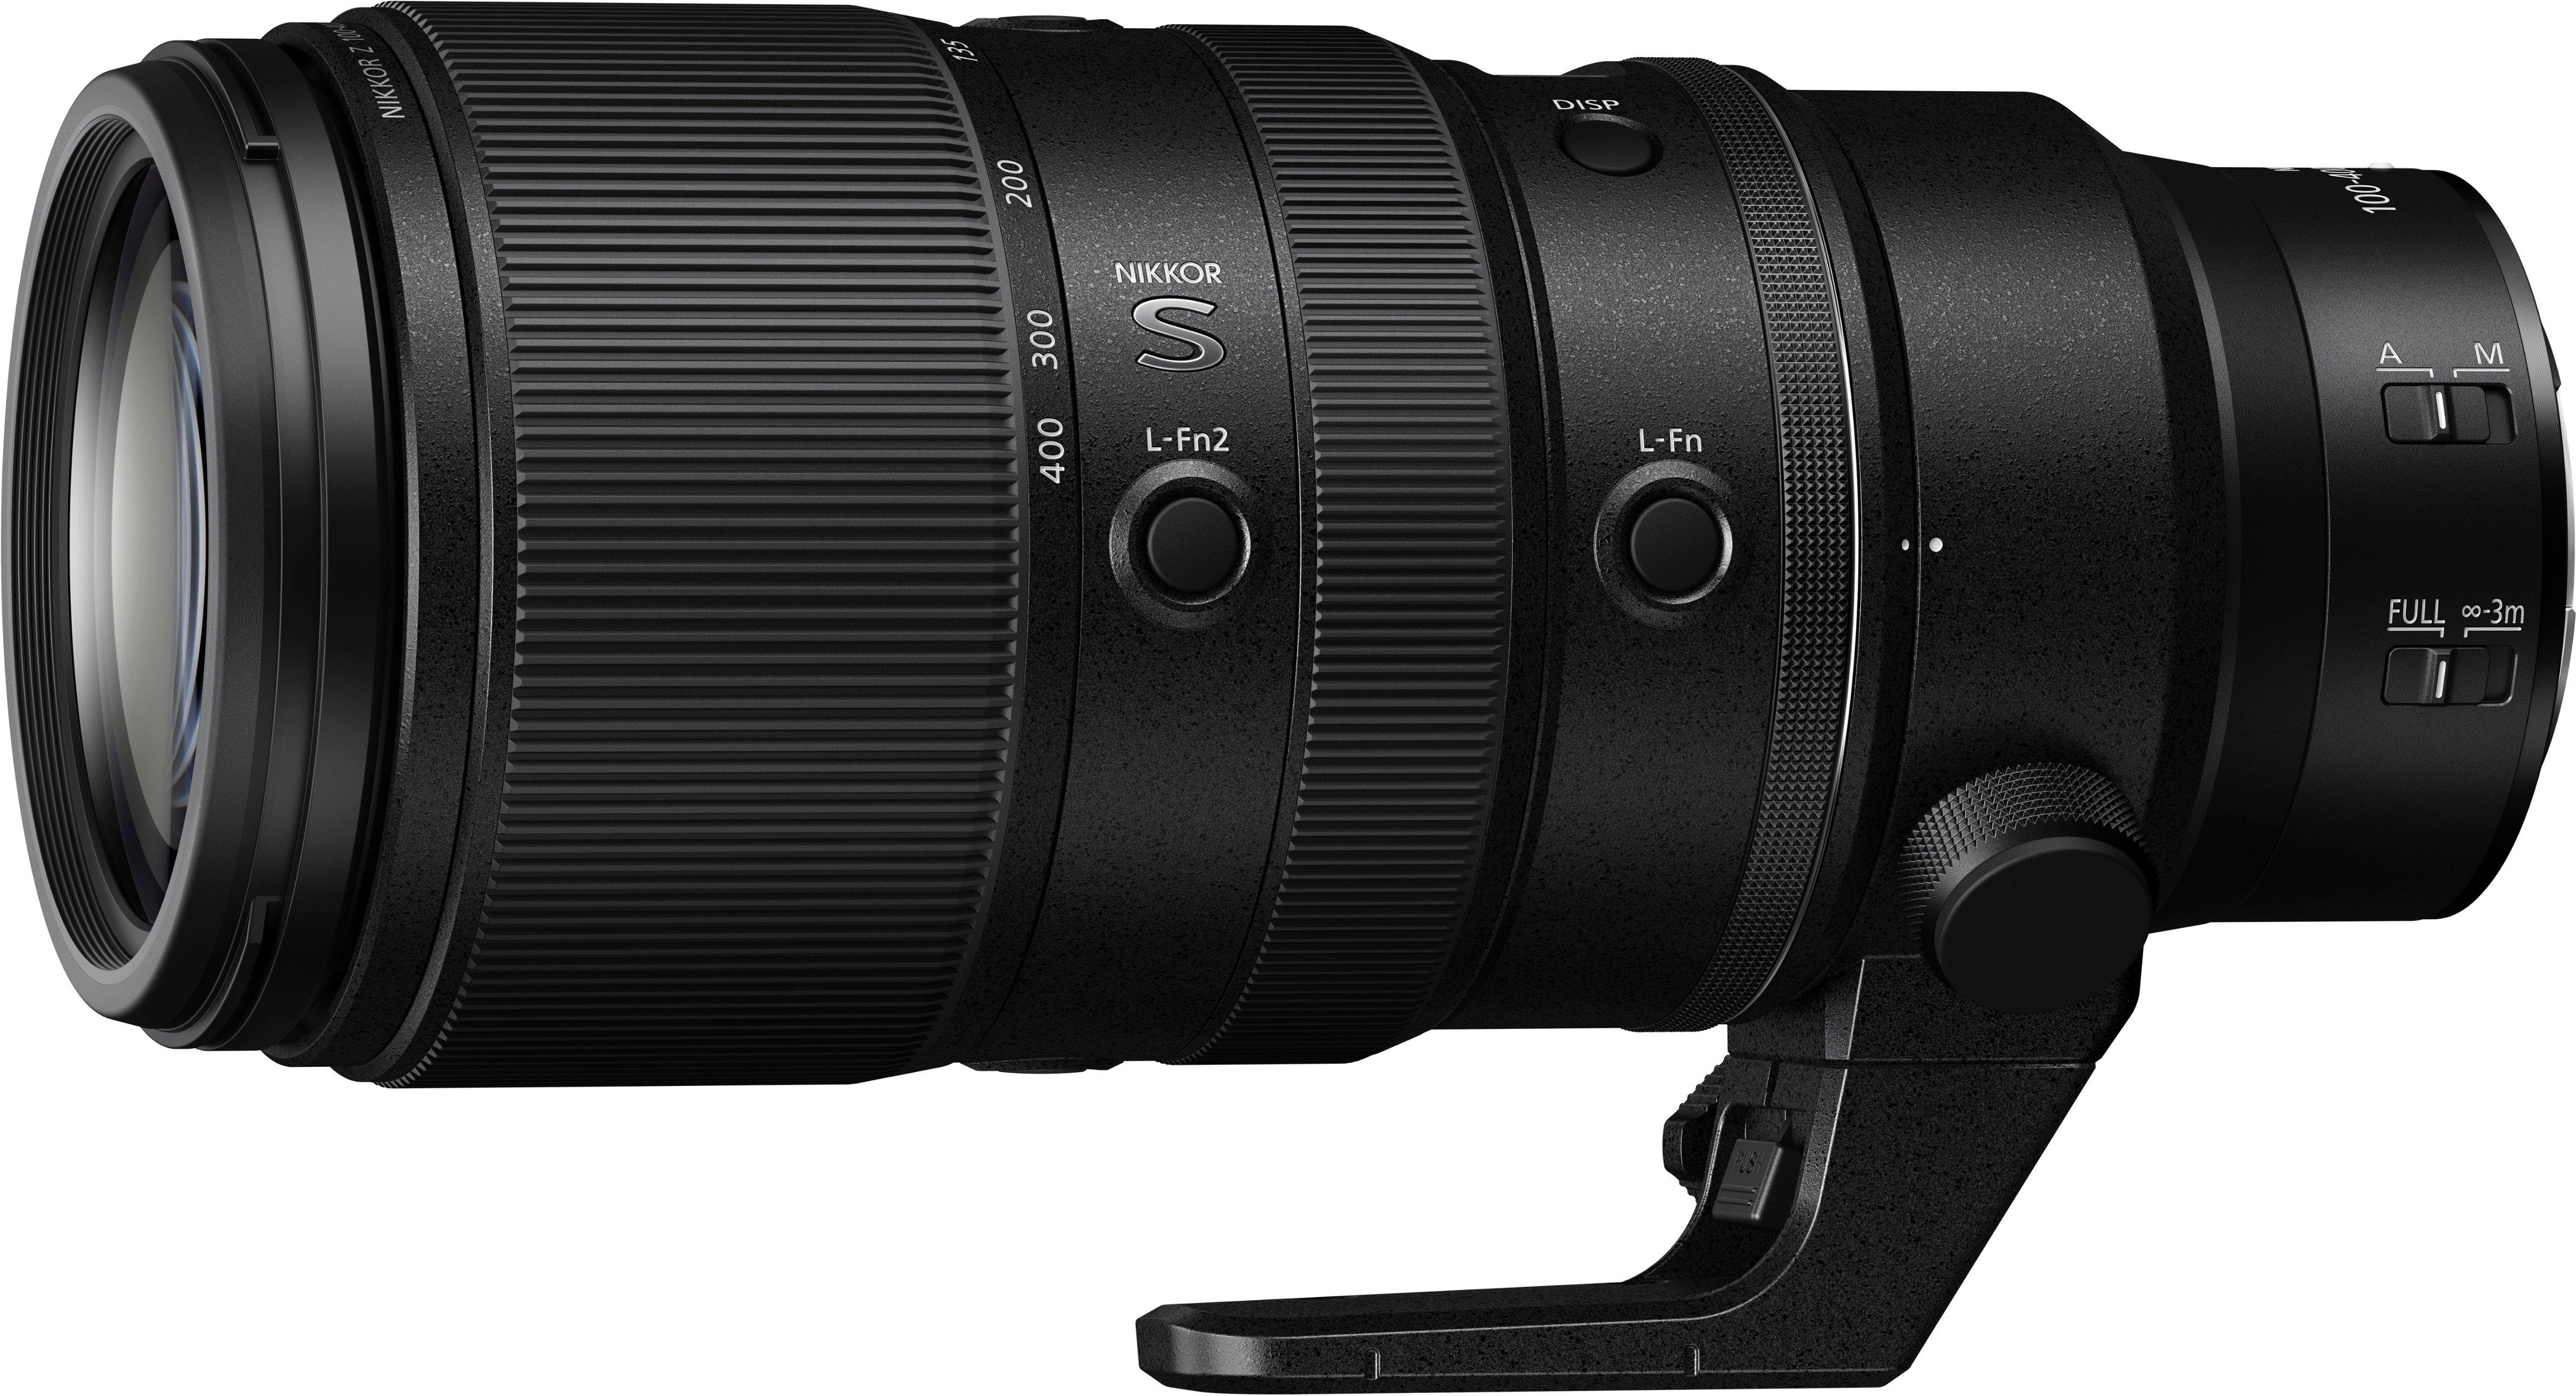 Back View: Nikon - NIKKOR Z 100-400mm f/4.5-5.6 VR S Super-Telephoto Lens for Z Series Mirrorless Cameras - Black